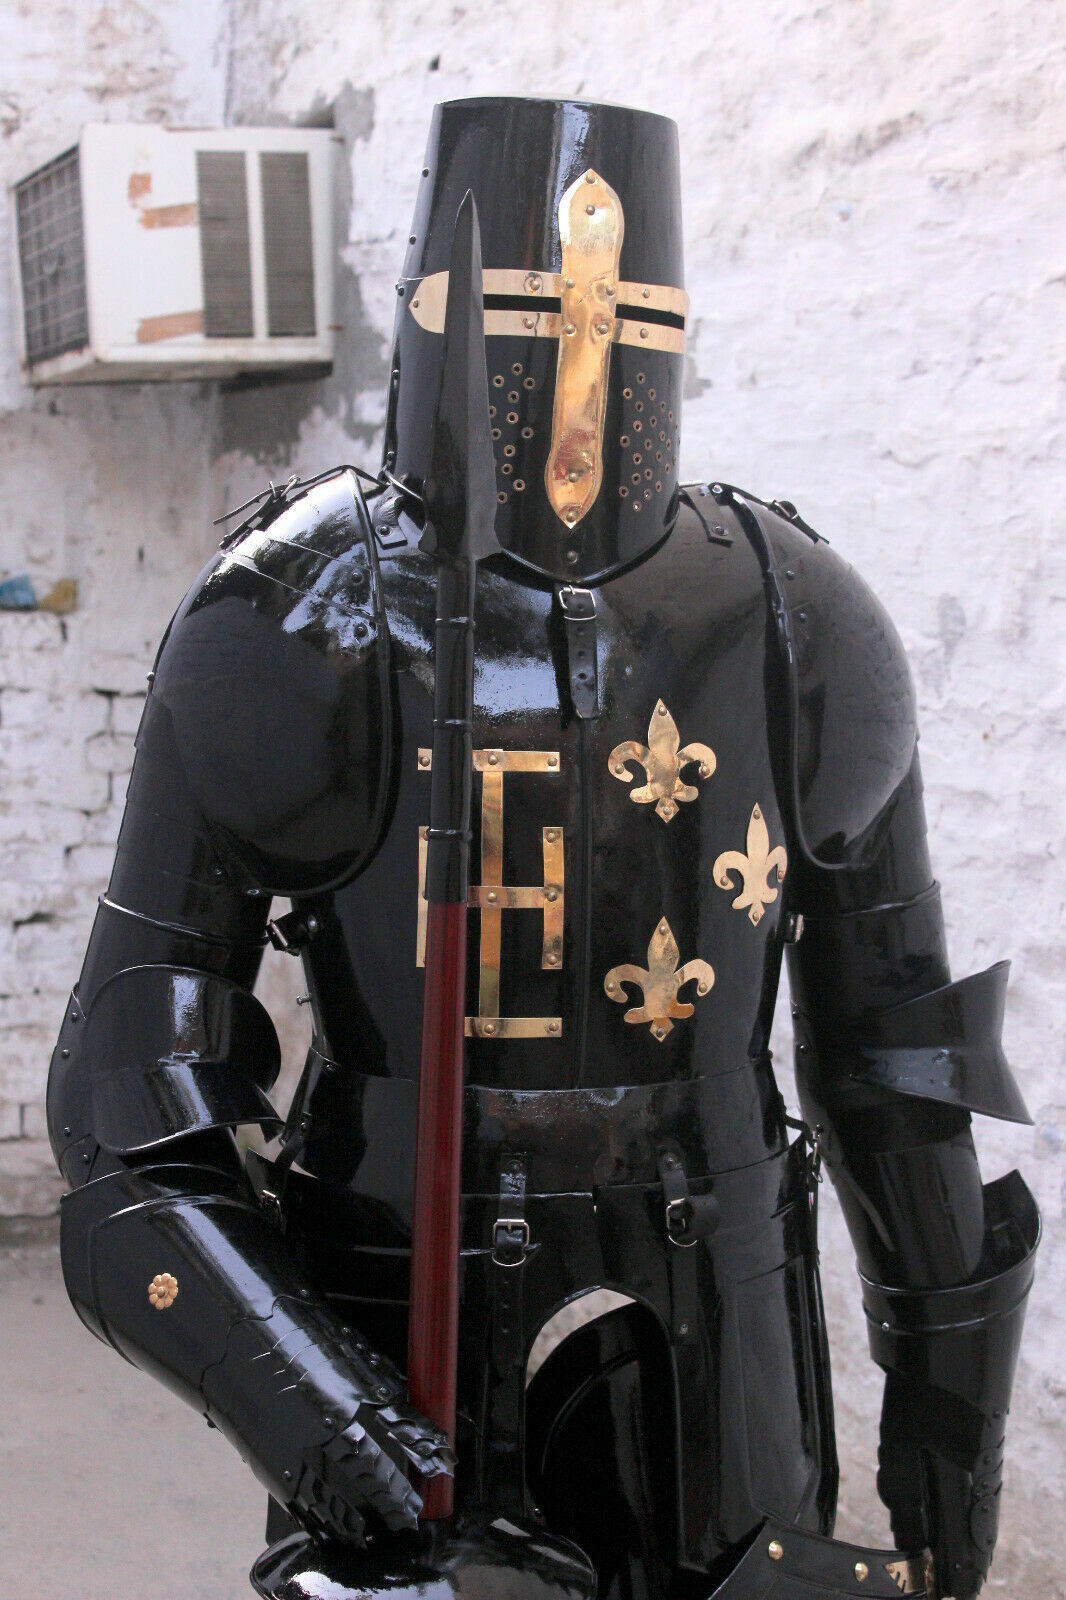 Full Black Knight Suit of Armor Antique Crusader Combat Full Body Amour costume